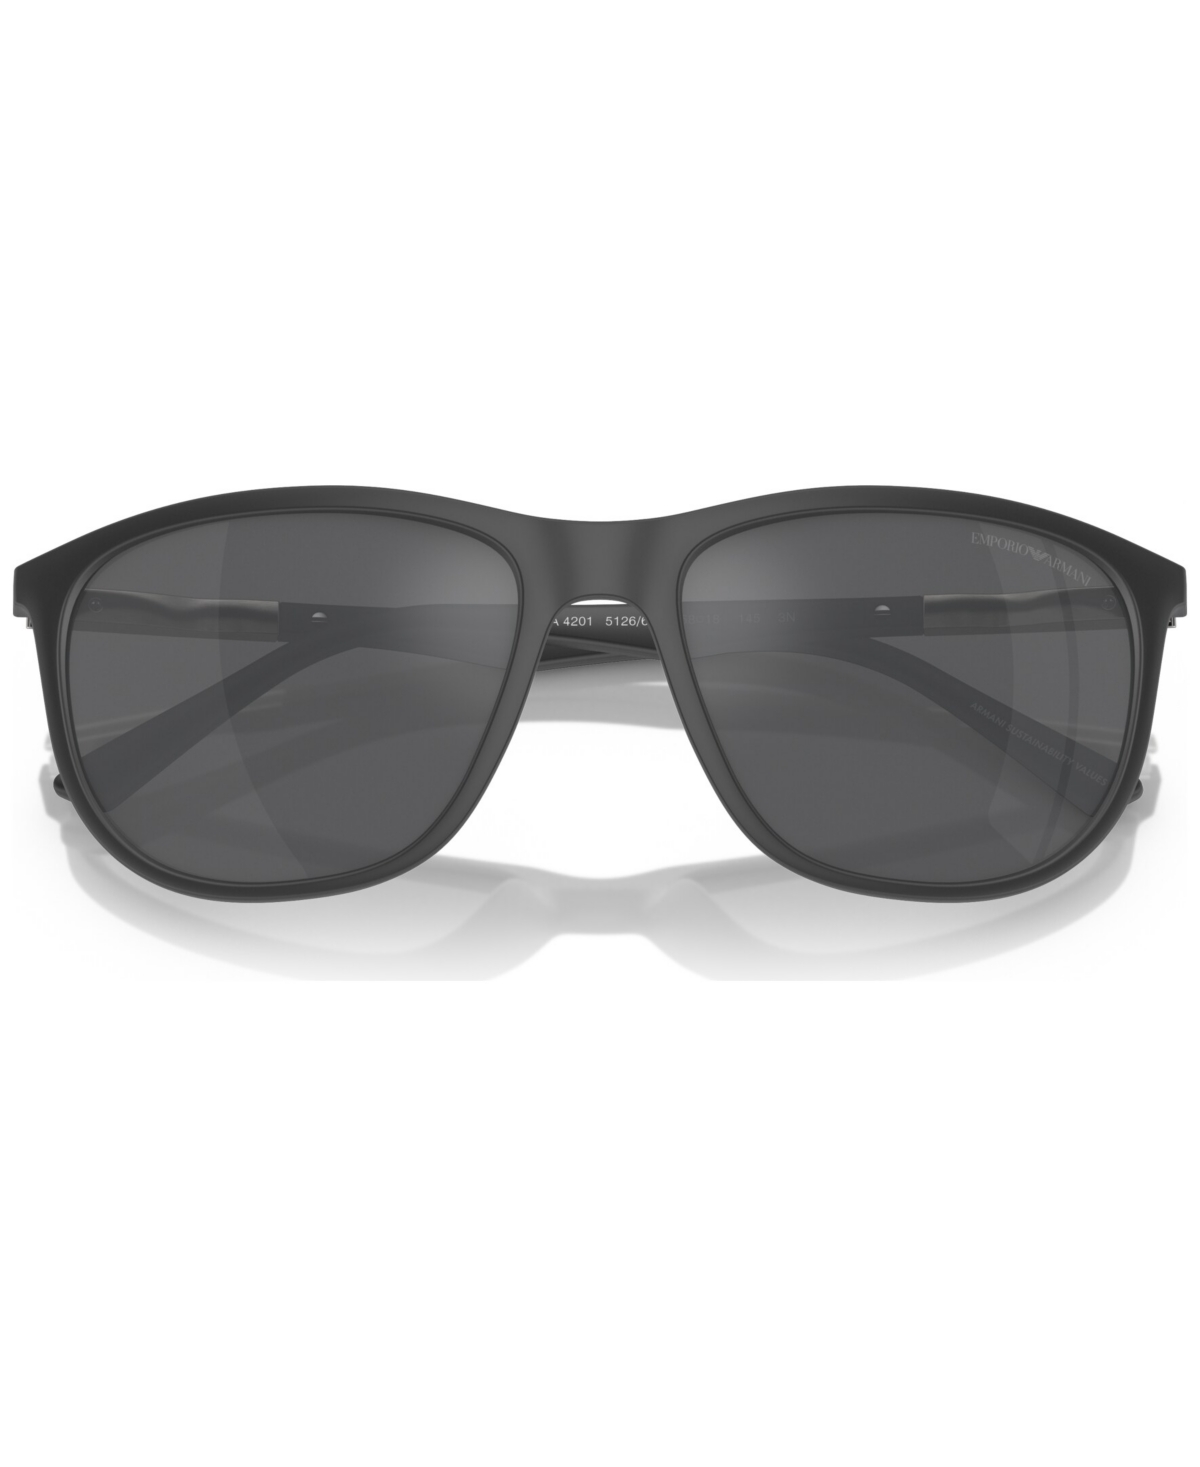 Shop Emporio Armani Men's Sunglasses, Ea4201 In Matte Gray